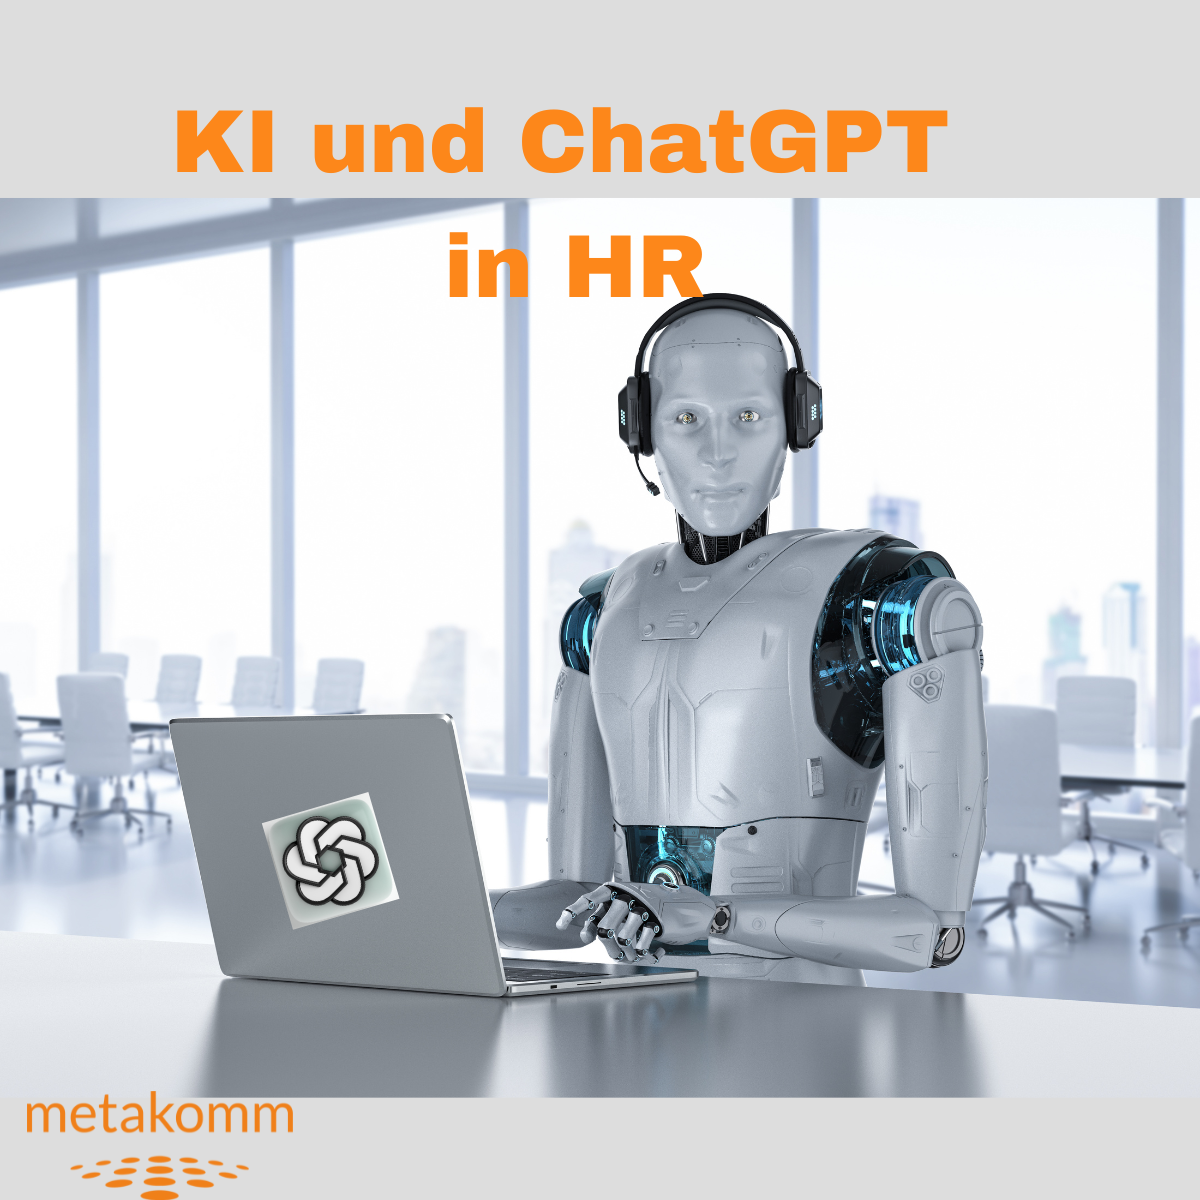 KI und ChatGPT in HR by Metakomm